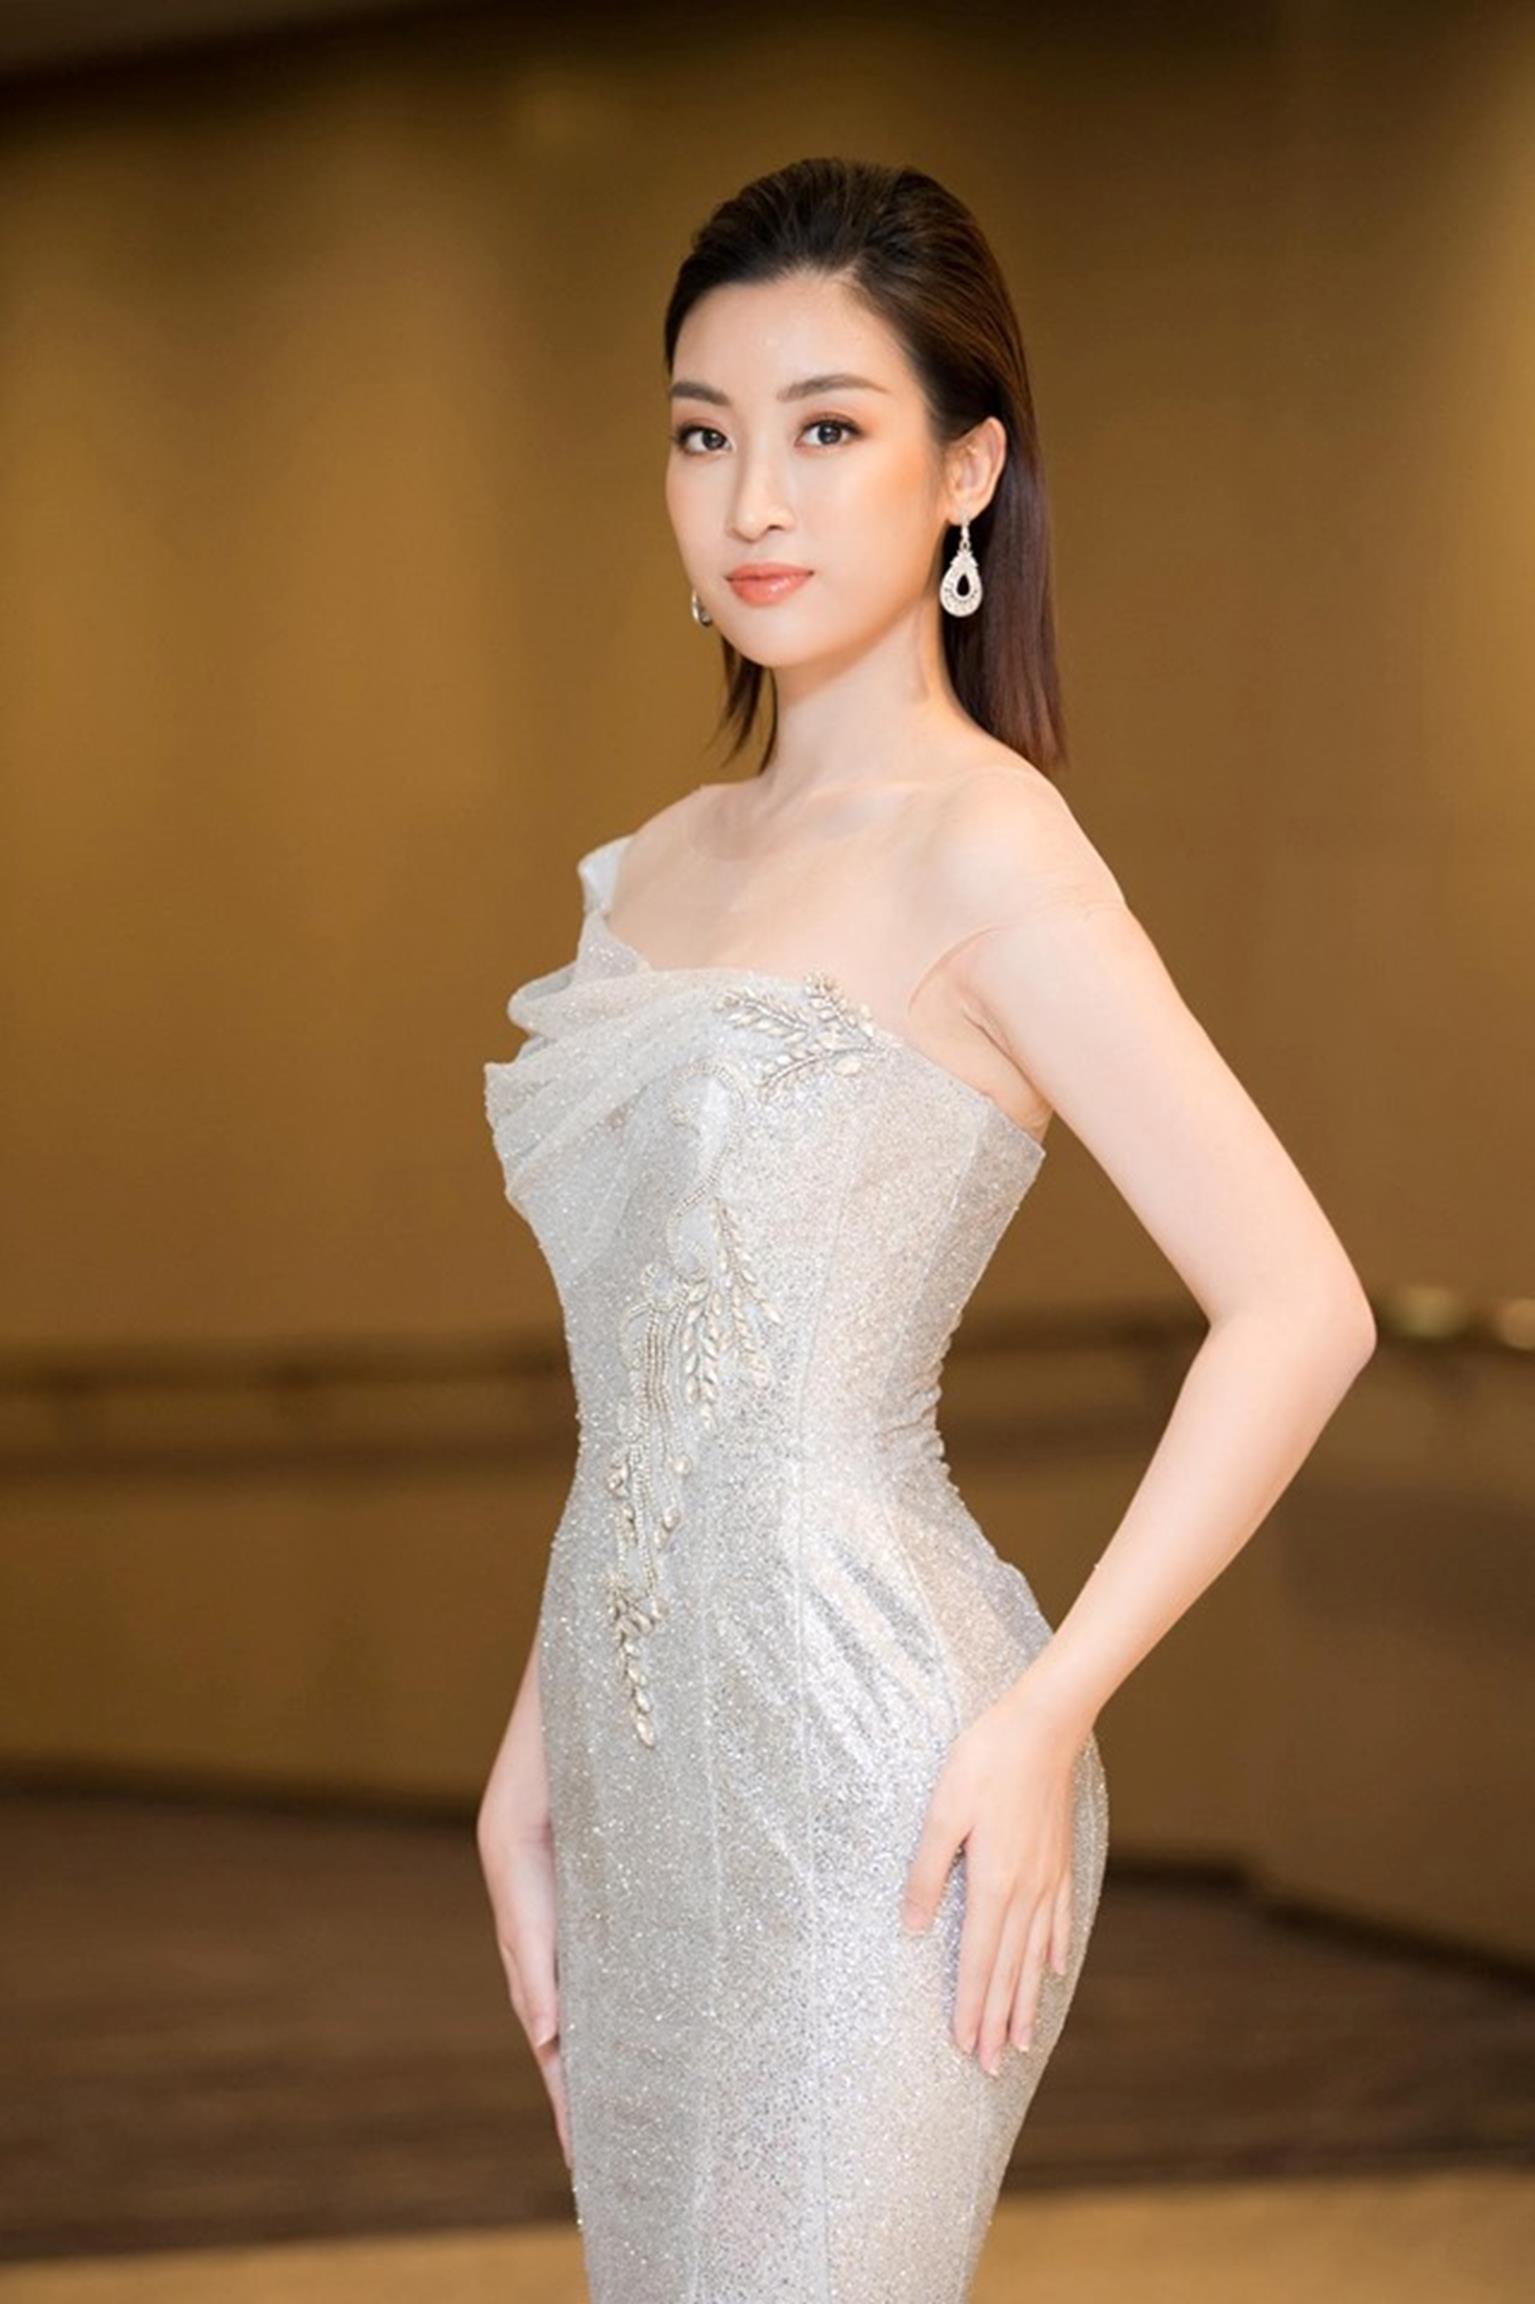 Hoa hậu Đỗ Mỹ Linh mặc đẹp tựa nữ thần, phớt lờ ồn ào bủa vây?-1